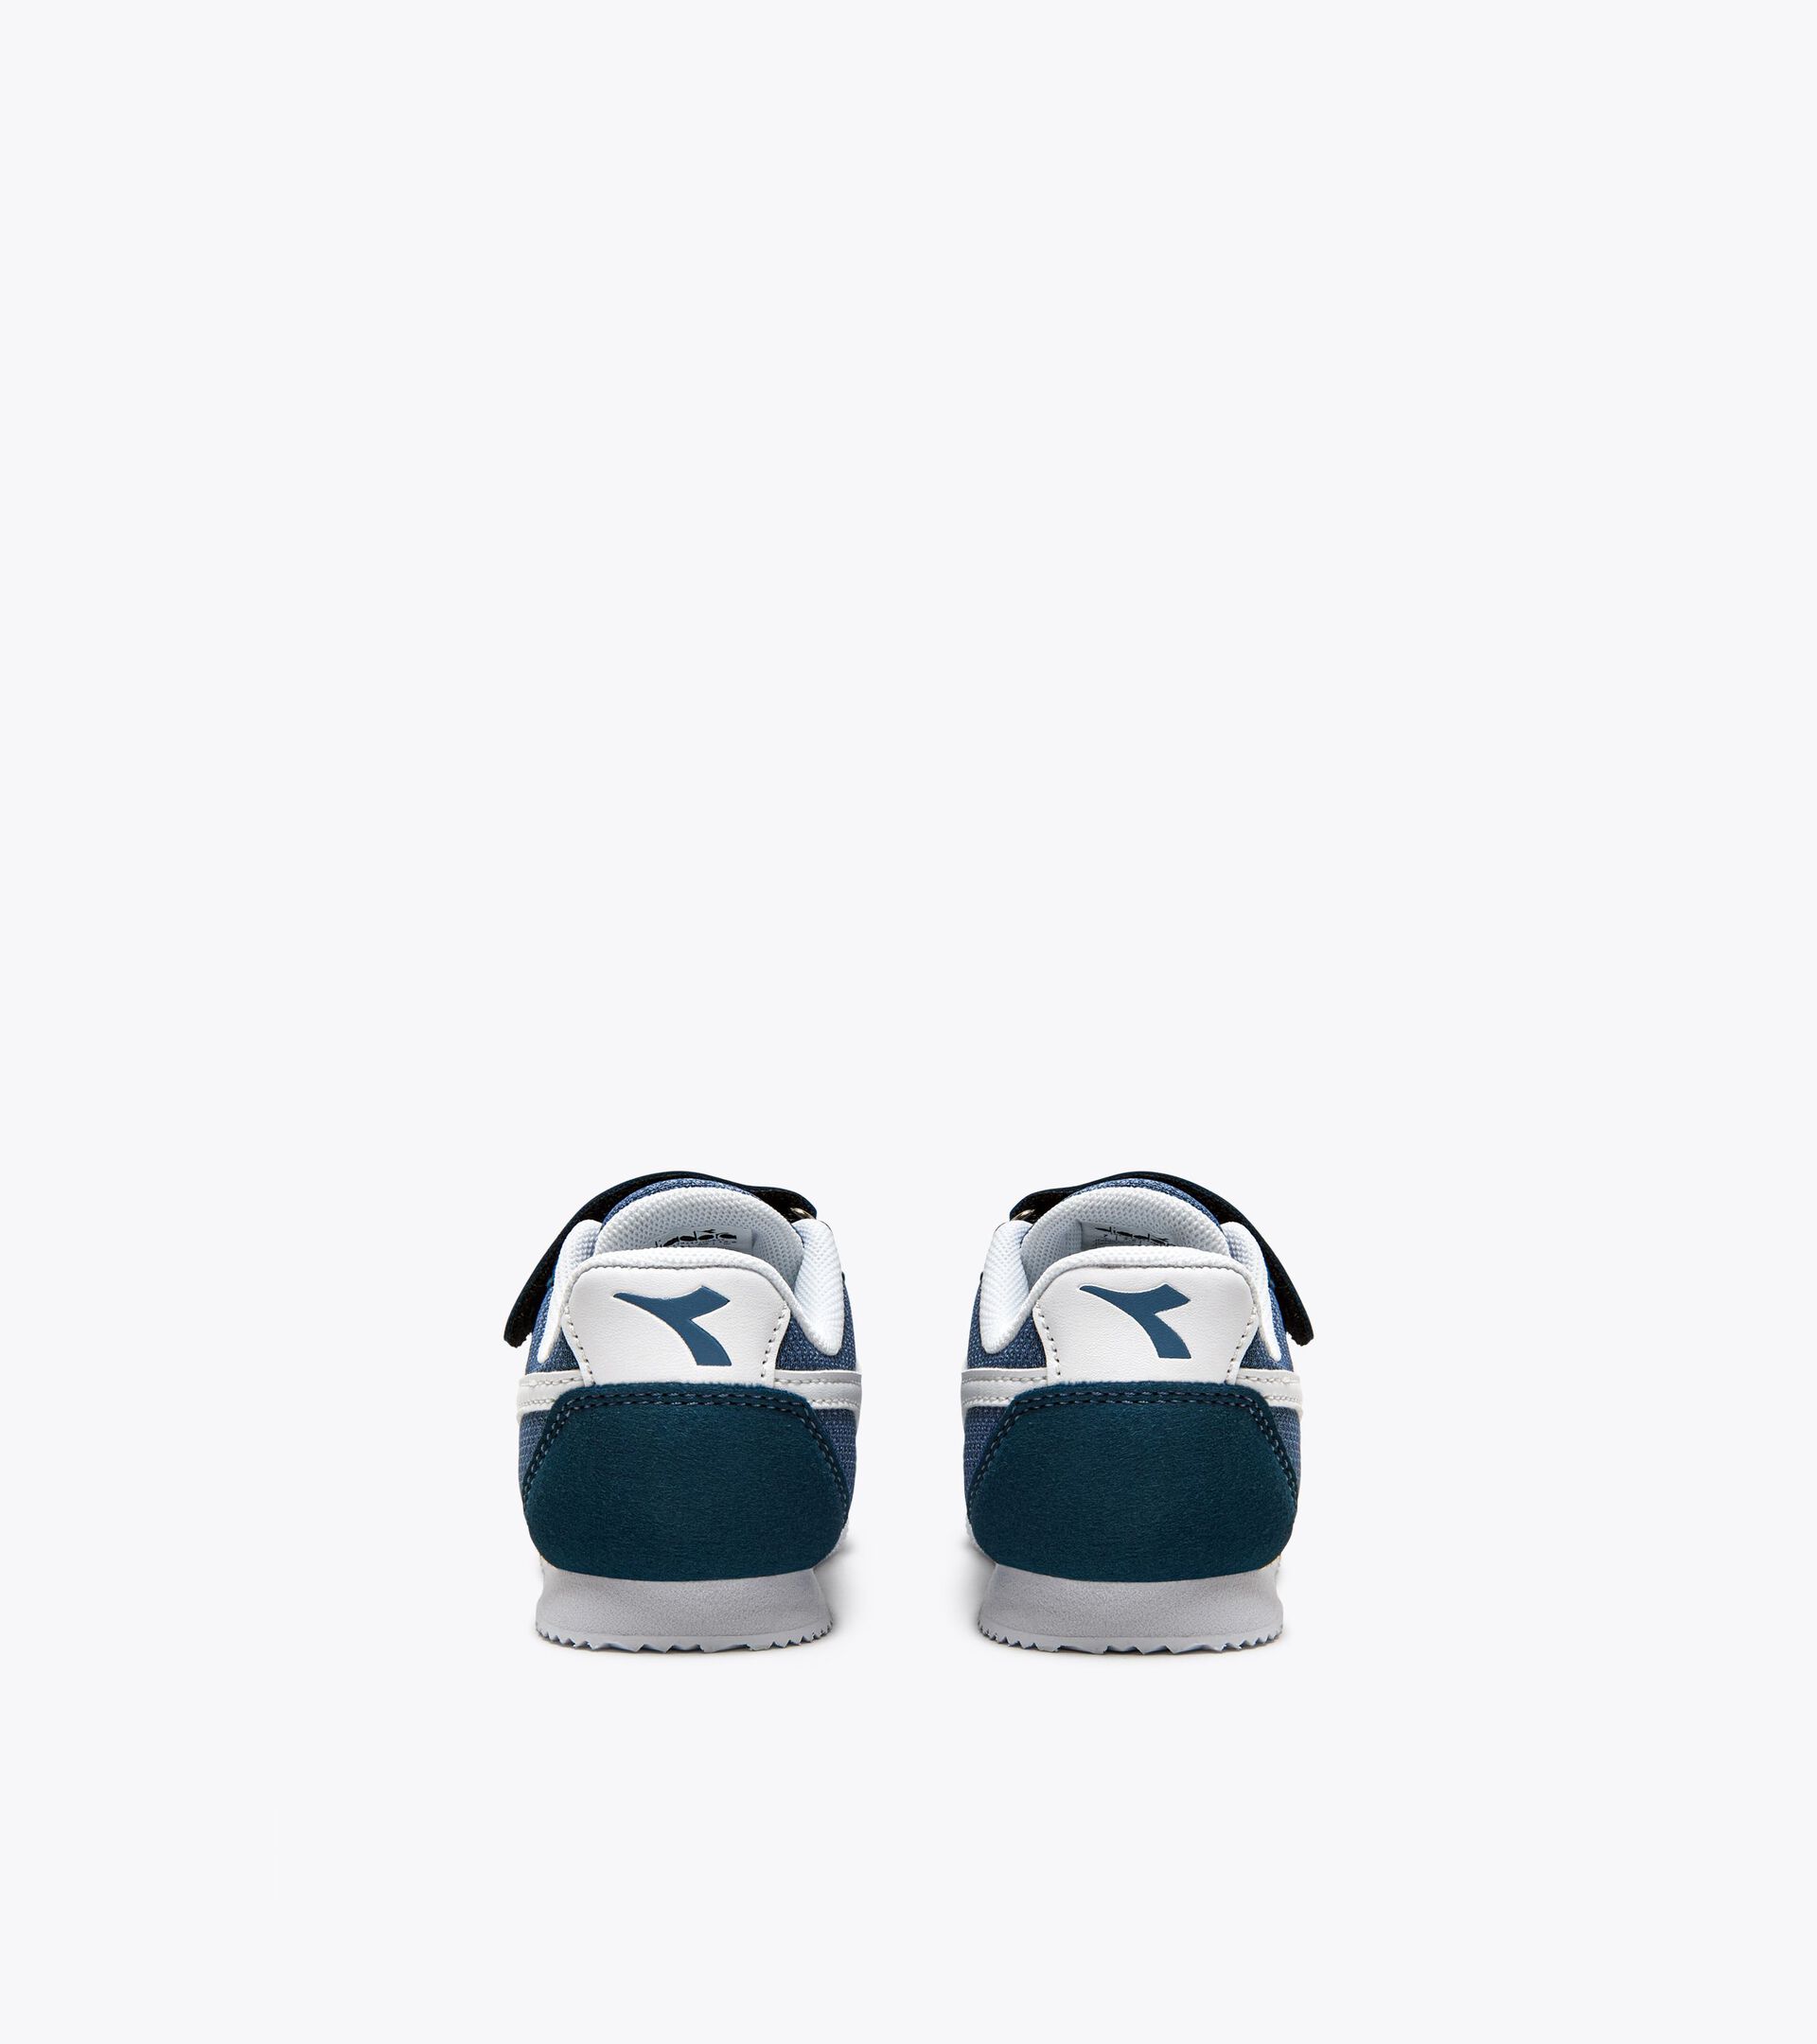 Zapatillas deportivas - Niños 1-4 años SIMPLE RUN TD LEGION BLUE/WHITE - Diadora